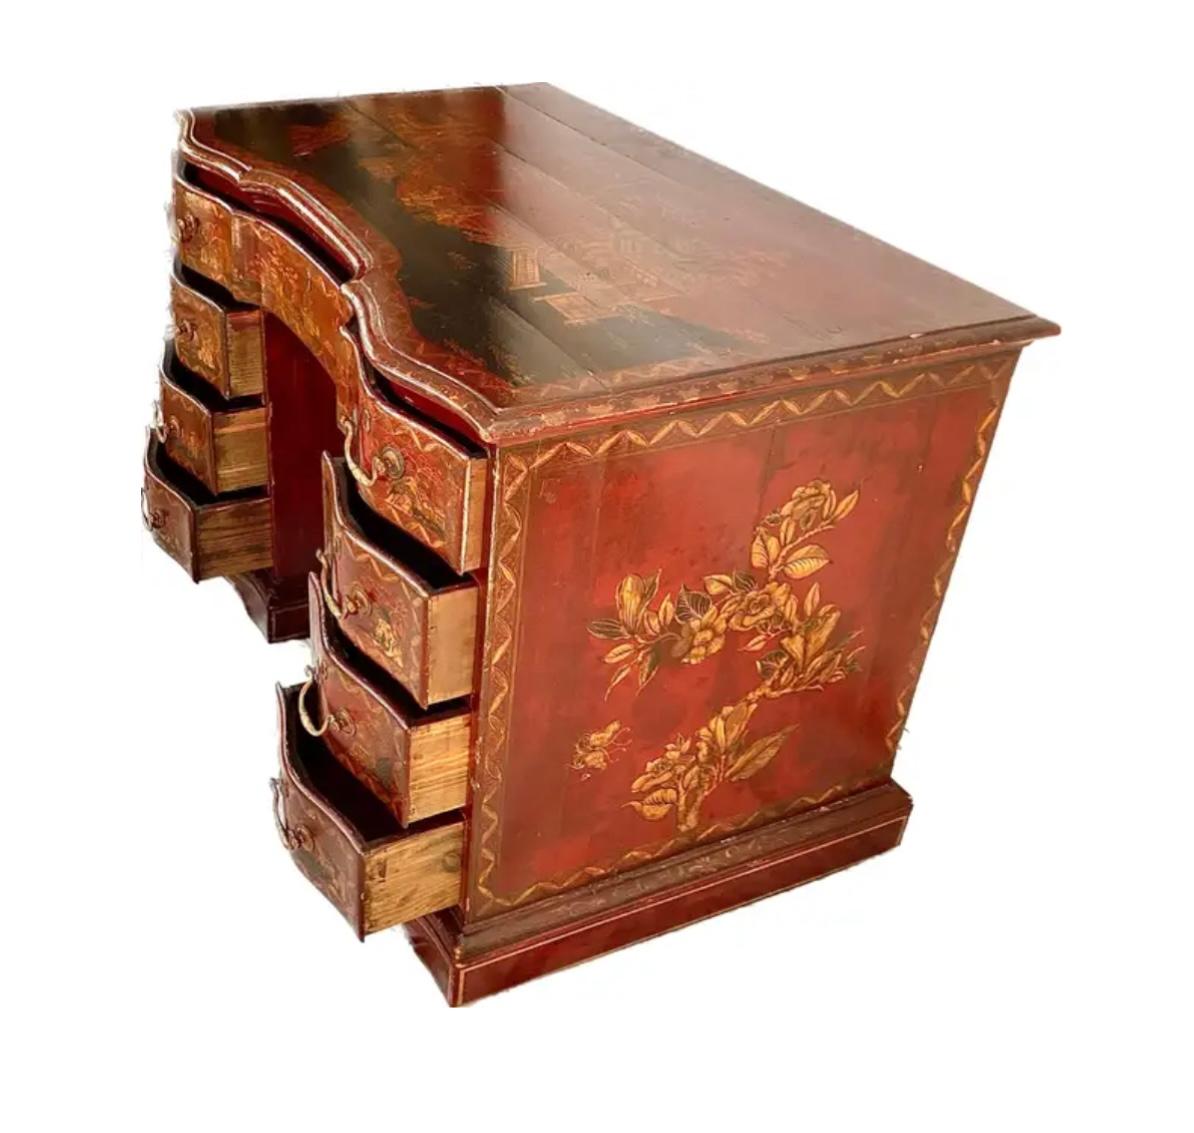 Chinoiserie-Knielochschreibtisch aus dem 19. Jahrhundert (George III). Die vergoldete Chinoiserie befindet sich auf einem rot lackierten Hintergrund. Verzierte Klammerfüße stützen die drei zentralen Schubladen, die von drei passenden Schubladen